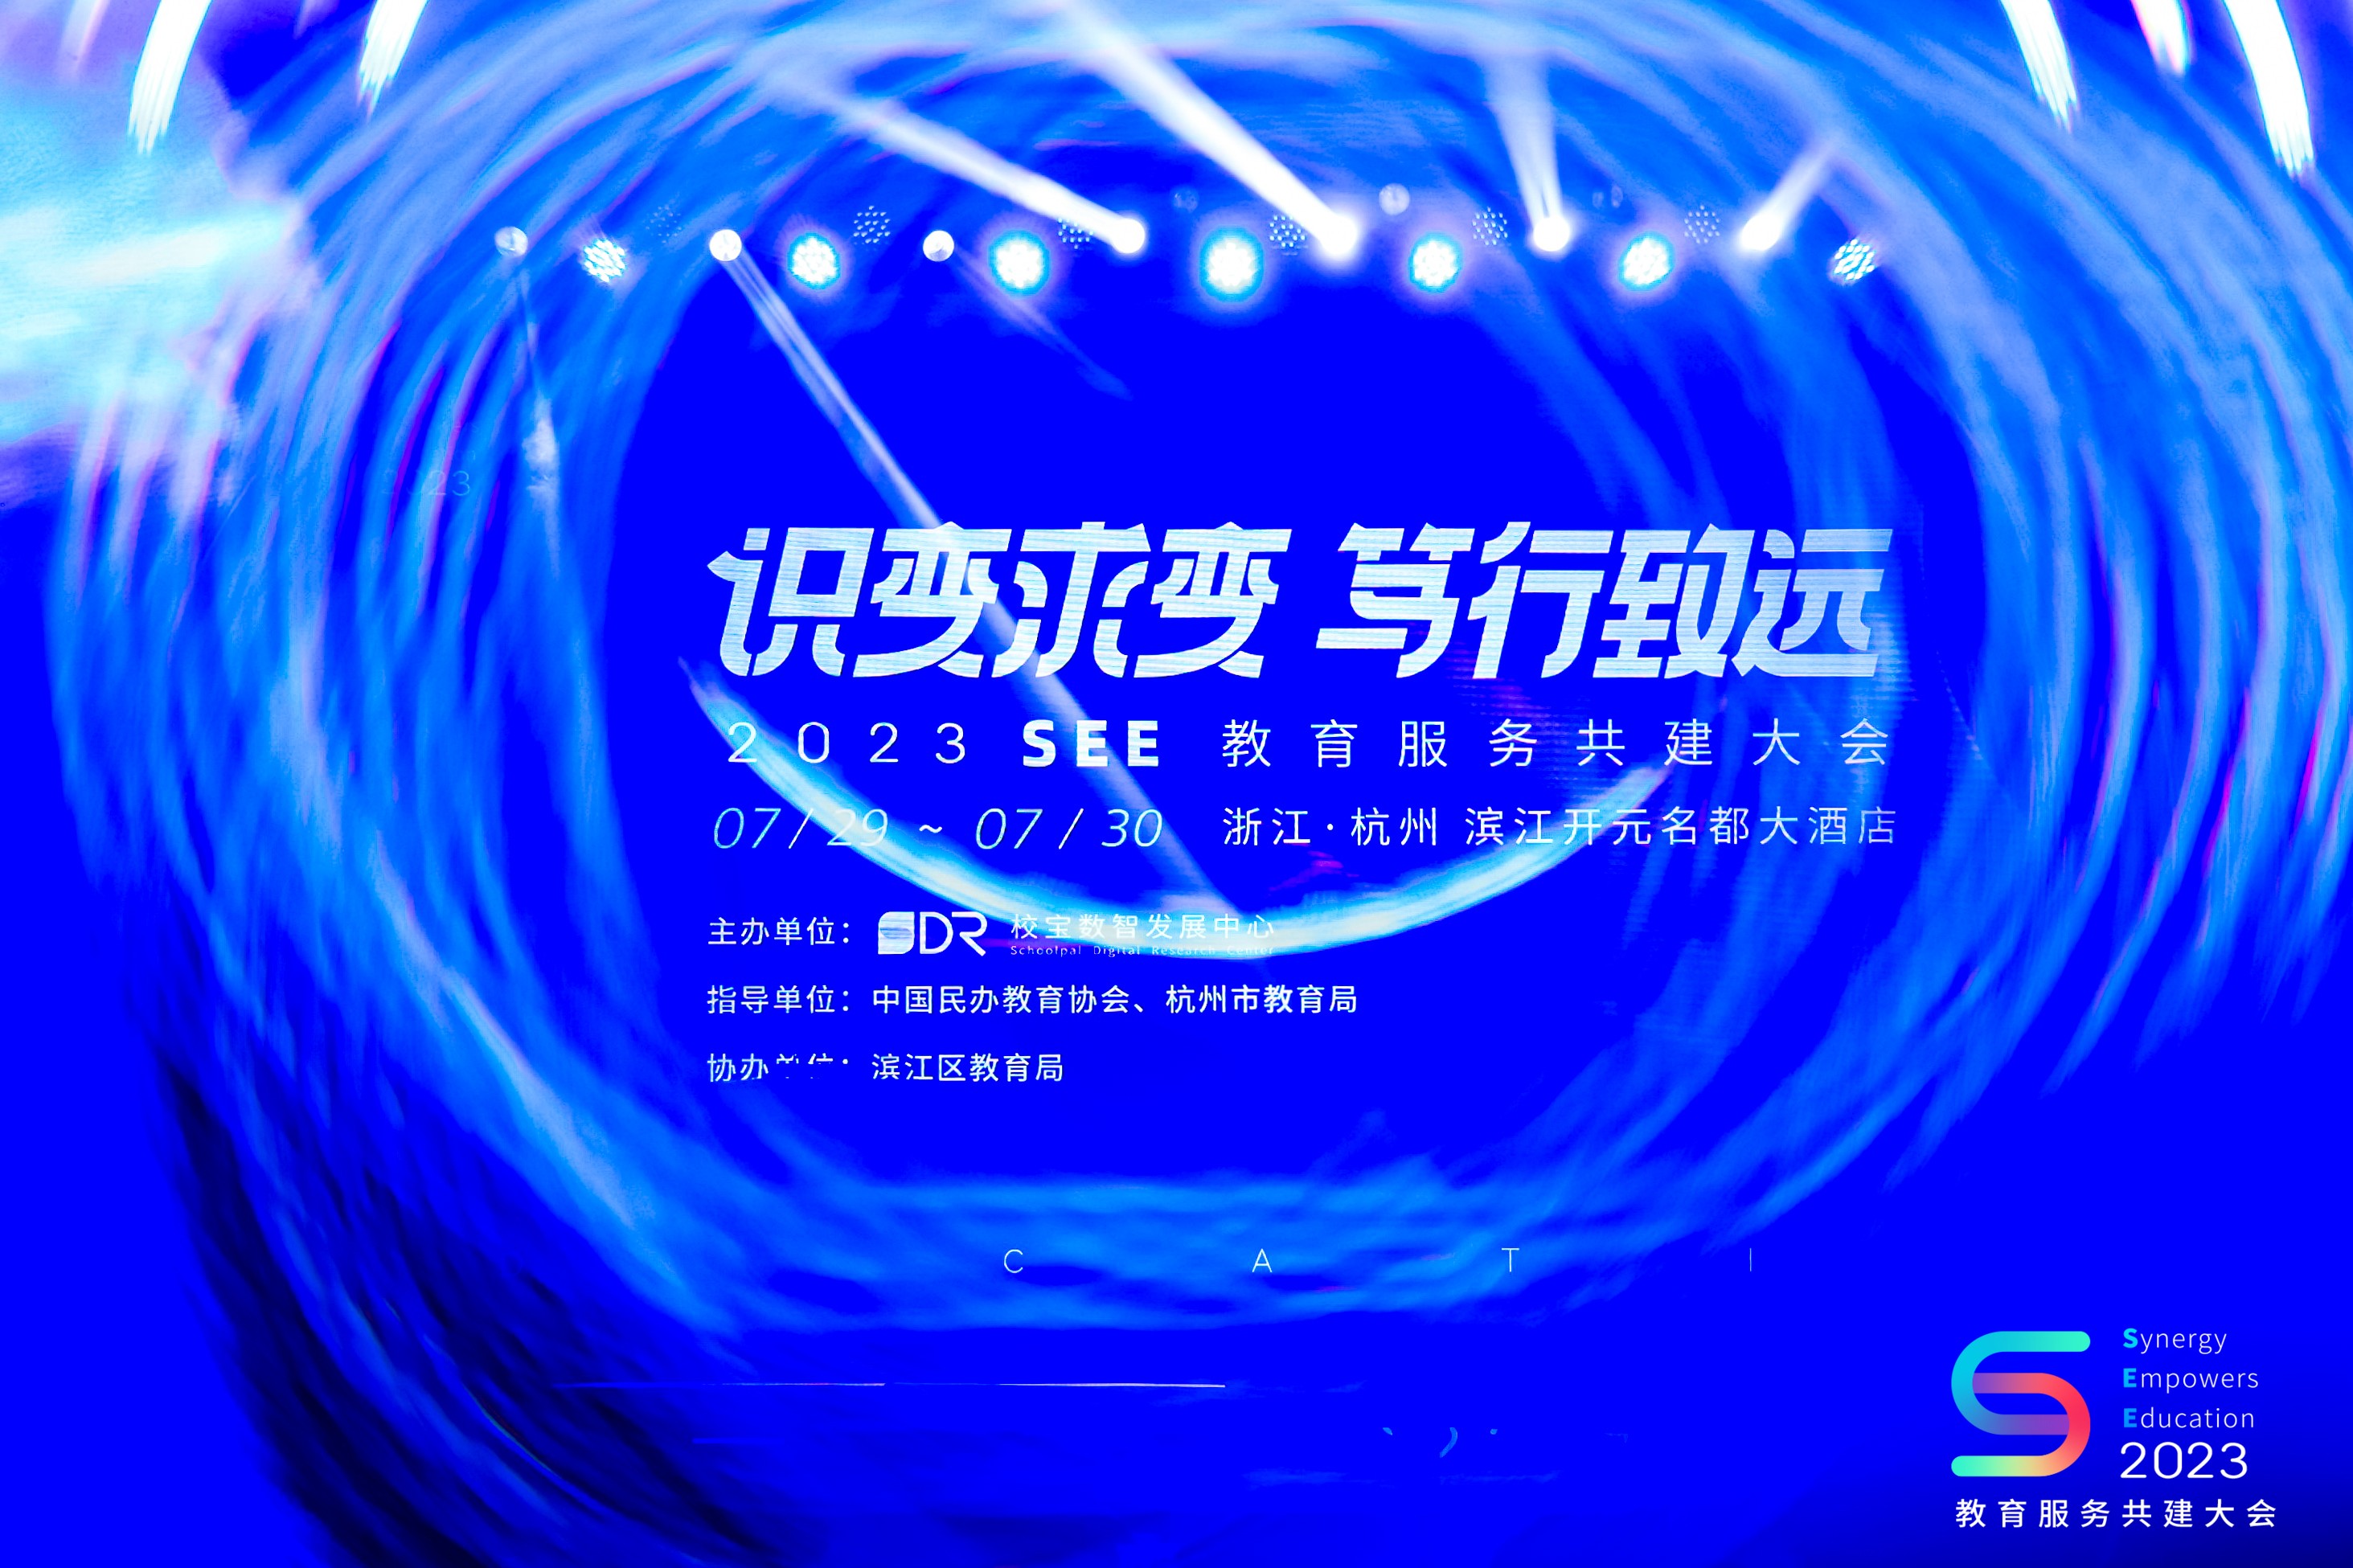 校宝在线SEE教育服务共建大会在杭州开幕 拥抱数字化新变化